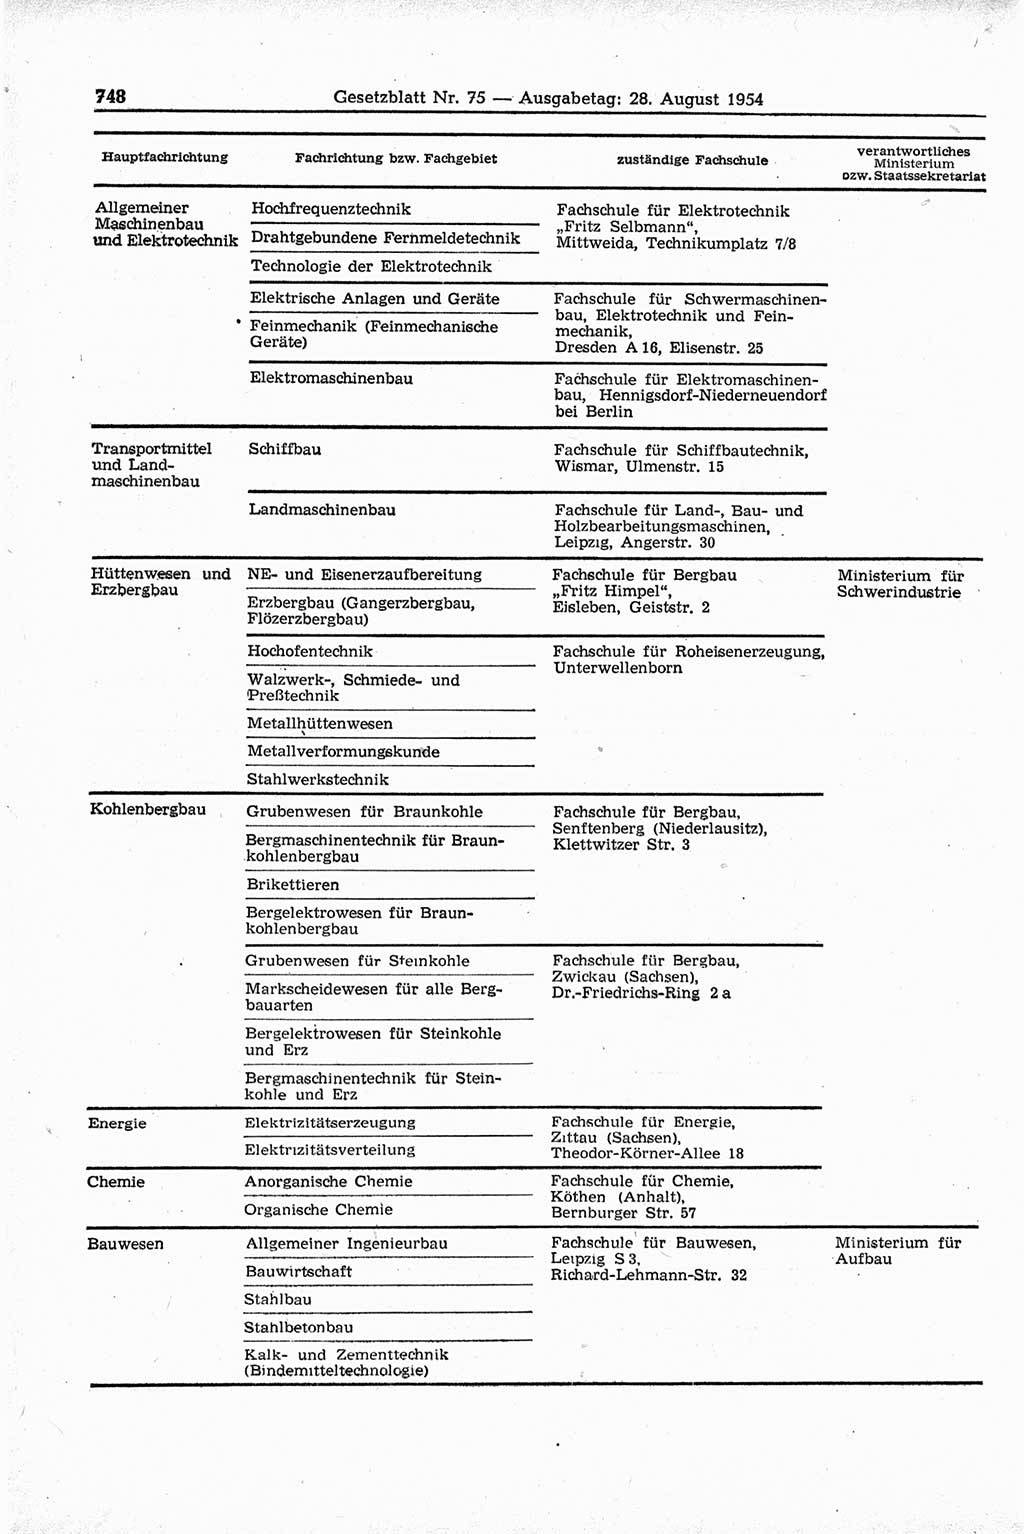 Gesetzblatt (GBl.) der Deutschen Demokratischen Republik (DDR) 1954, Seite 748 (GBl. DDR 1954, S. 748)